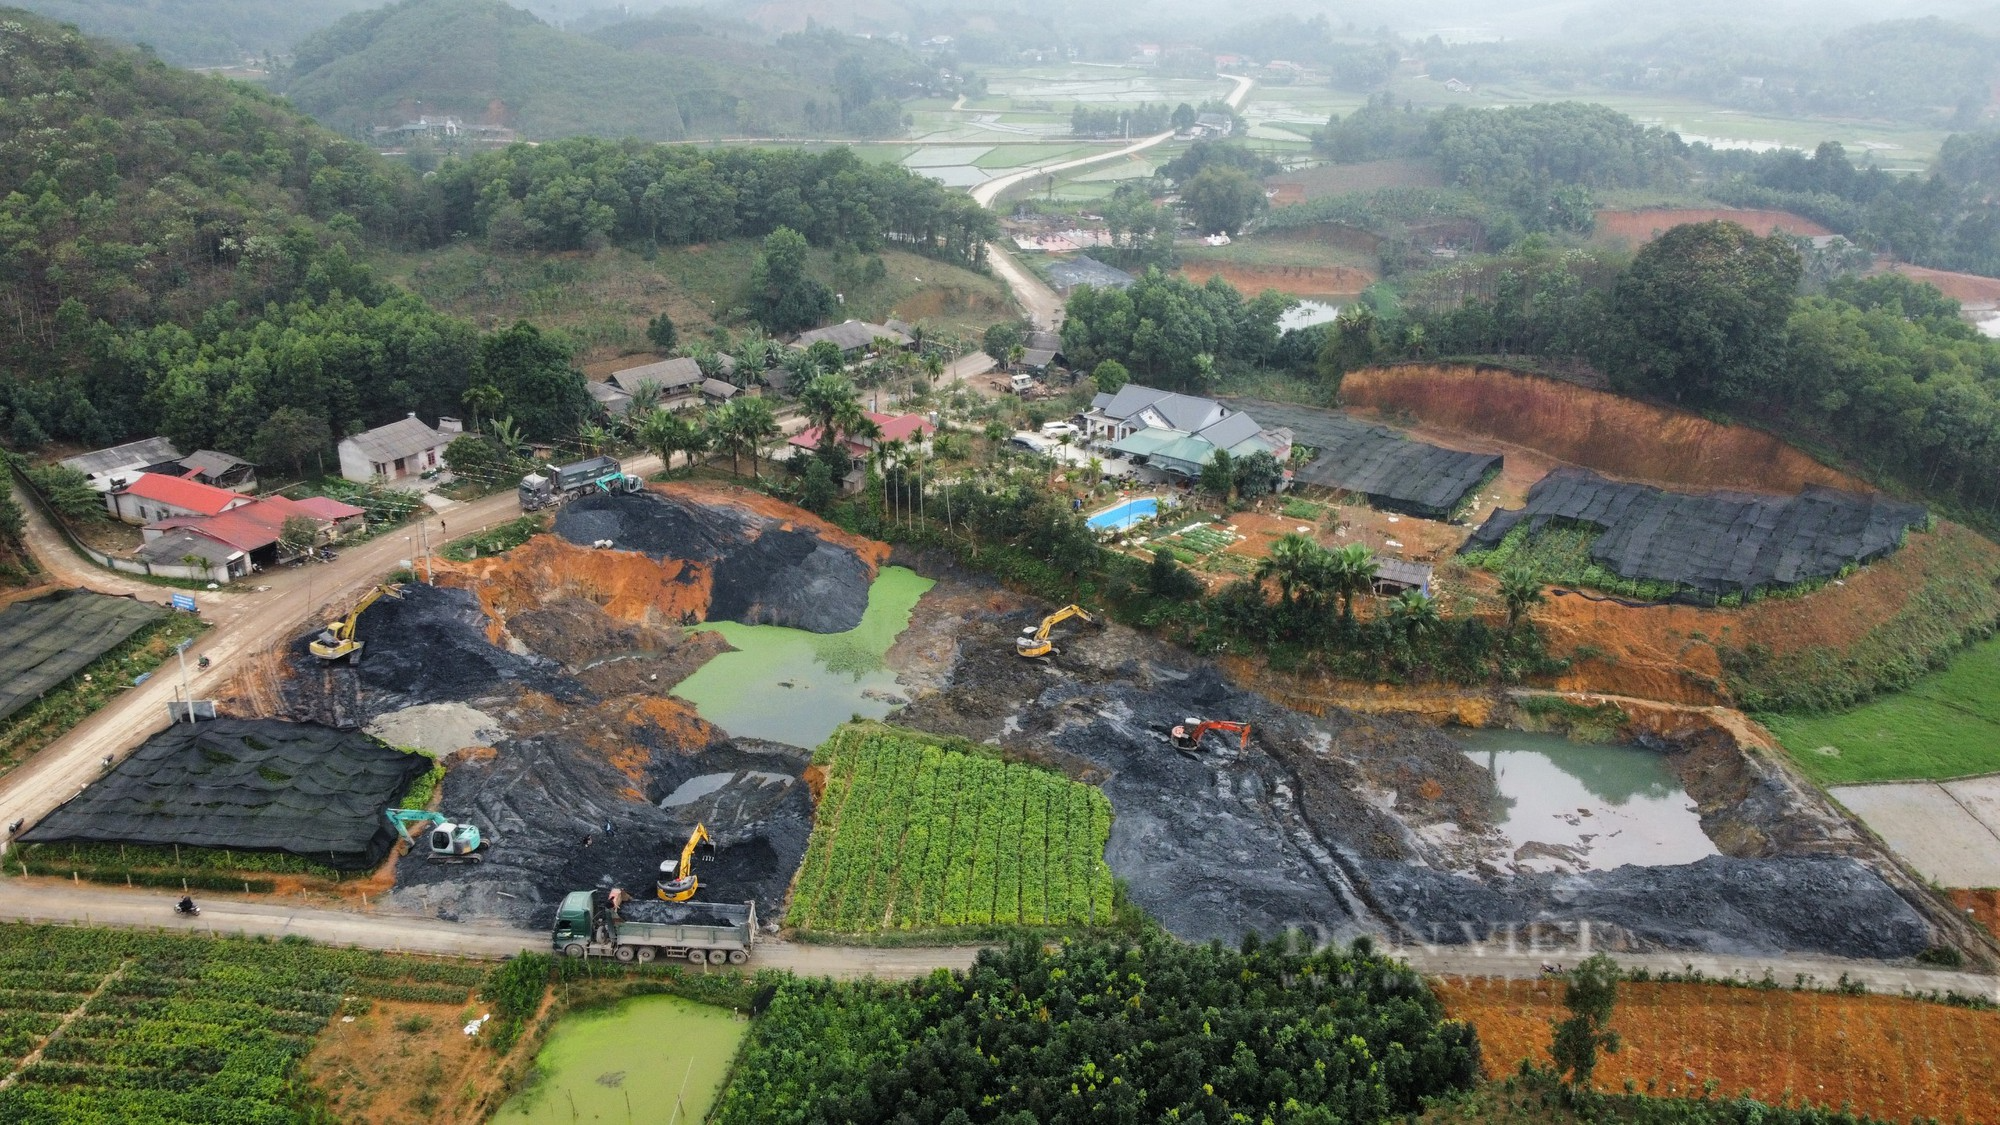 Khai thác khoáng sản trái phép tại Vân Hội: Chủ đất bị phạt 25 triệu đồng - Ảnh 1.